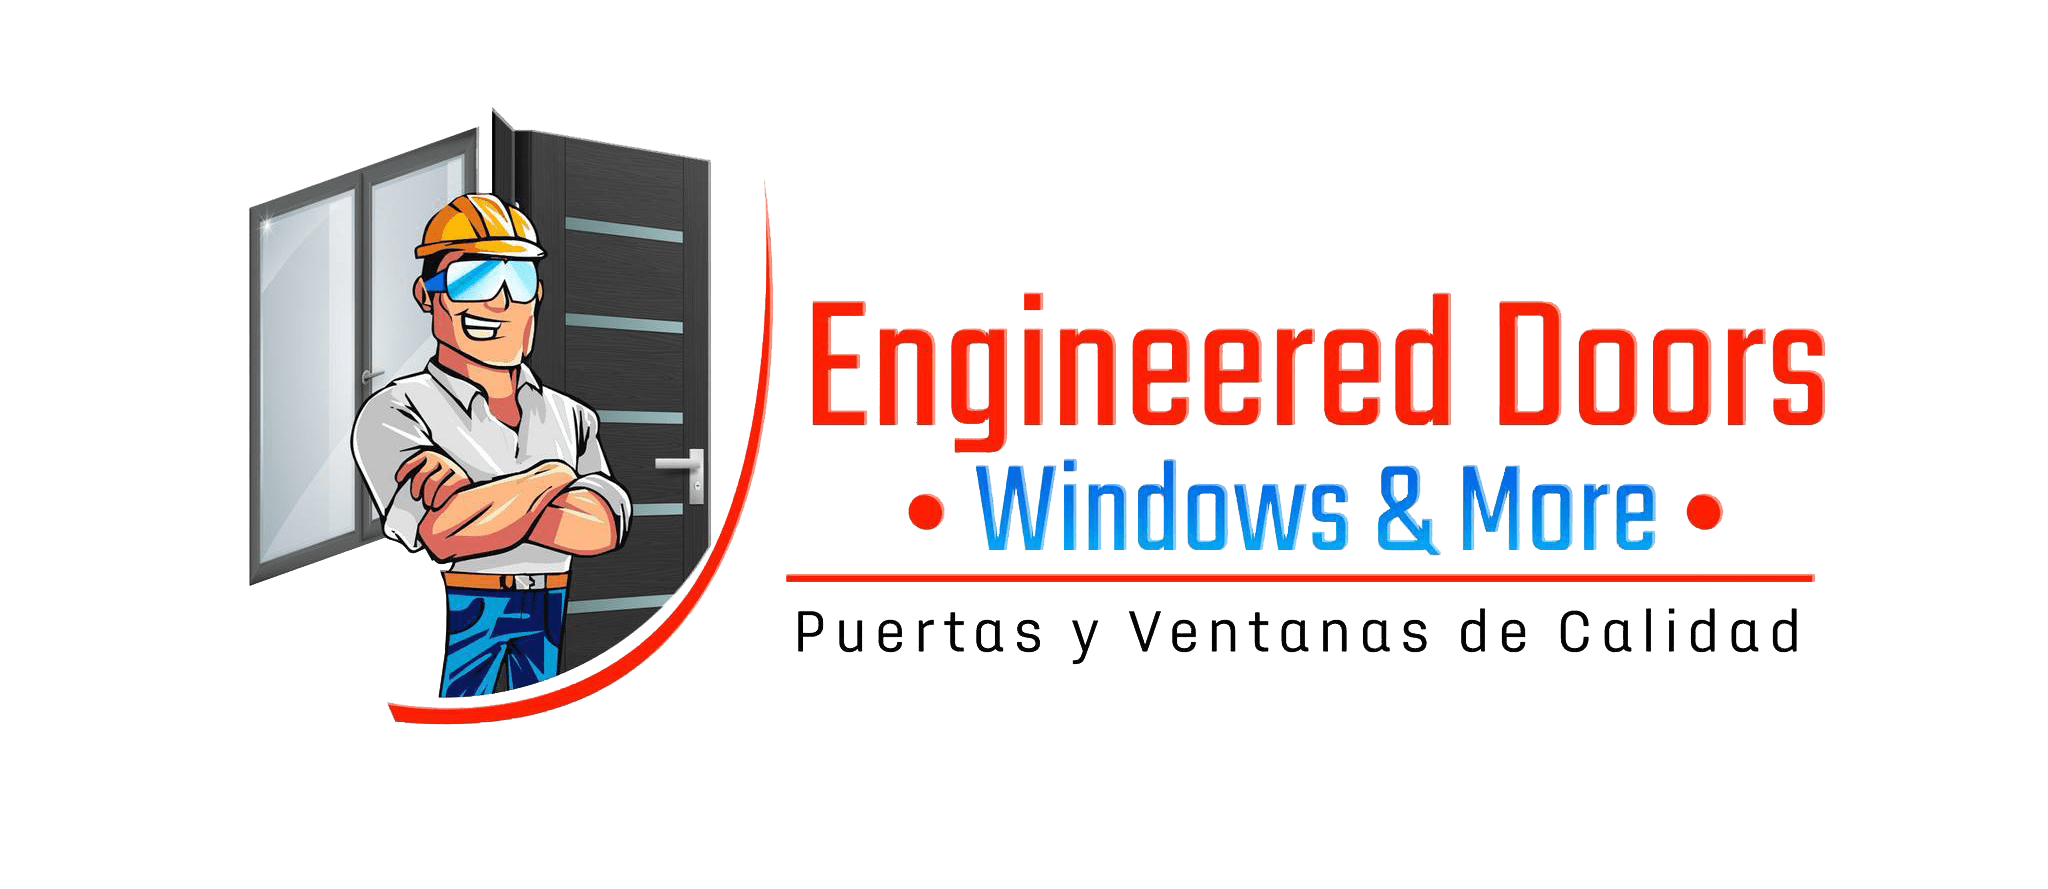 Ventas de puertas y ventanas (Logo)